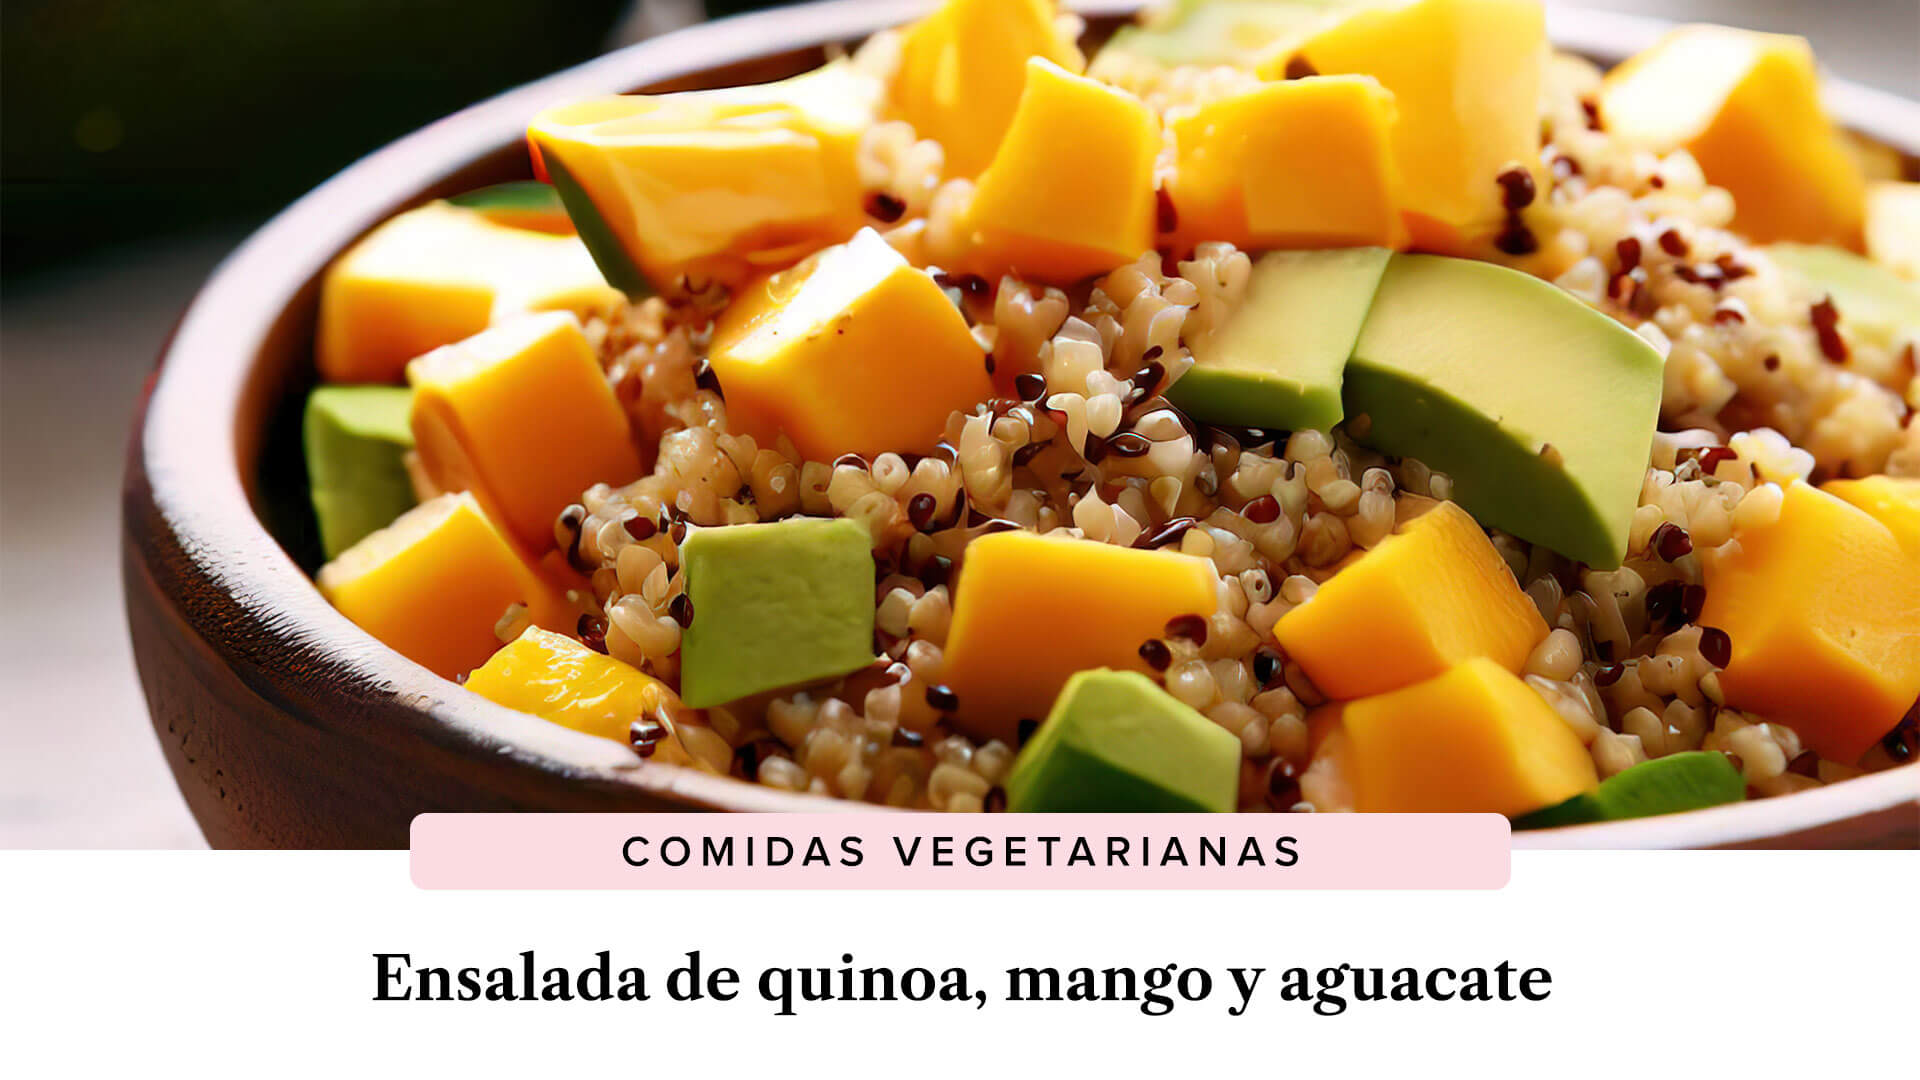 Ensalada de quinoa, mango y aguacate